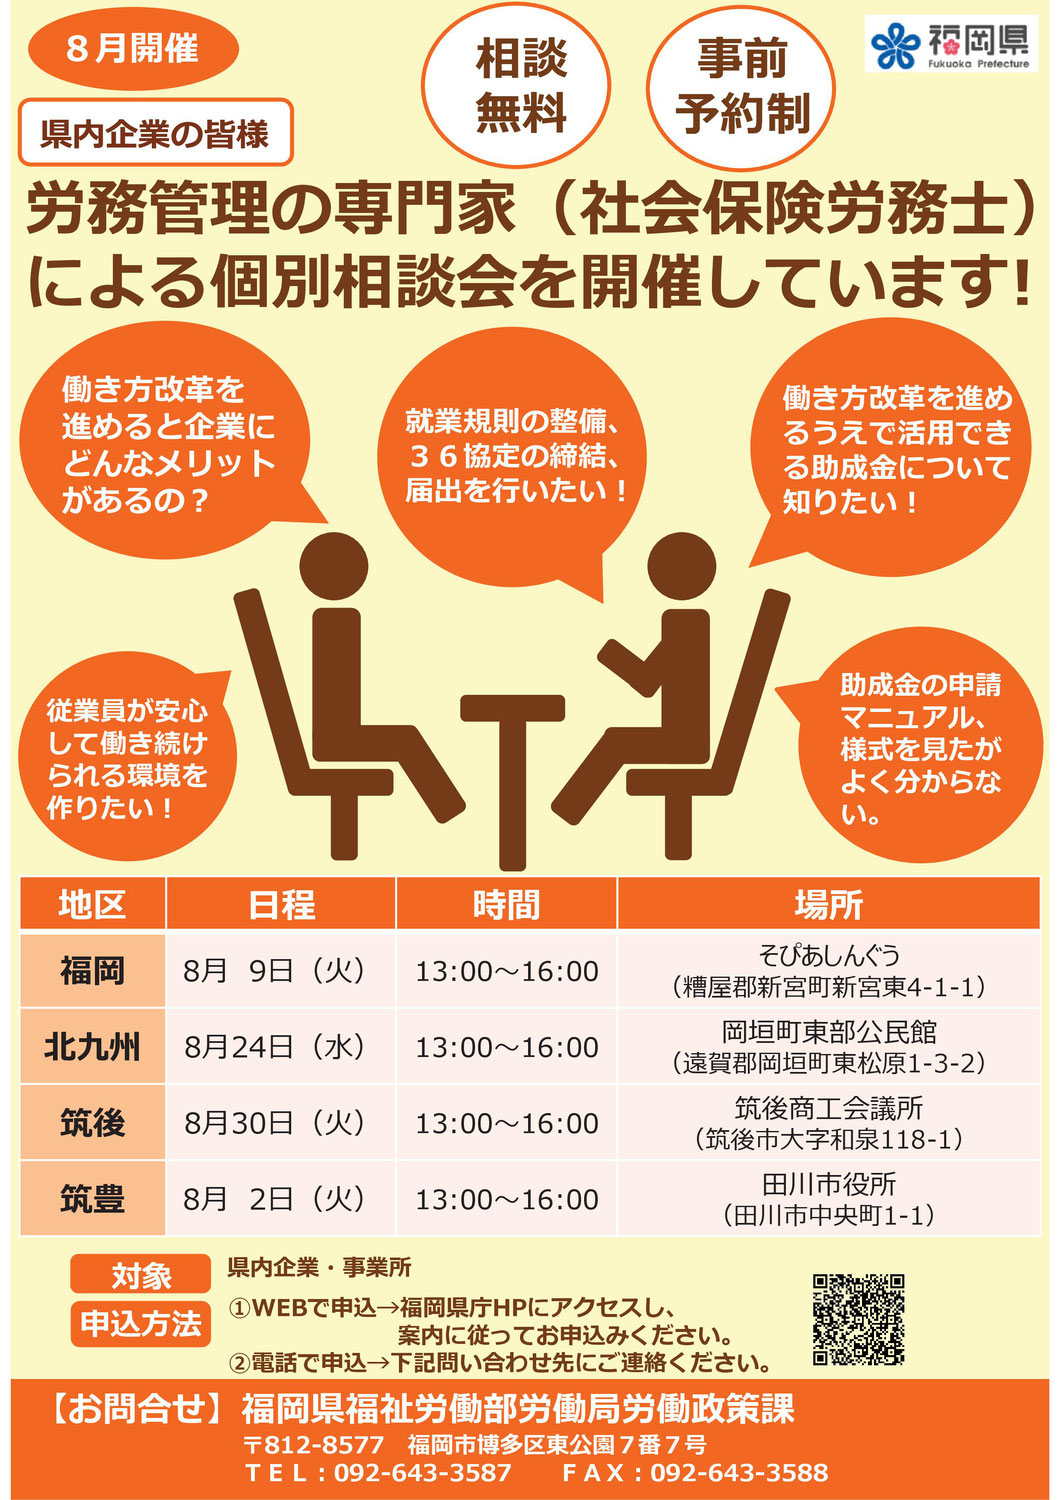 【８月】労務管理の専門家（社会保険労務士）による個別相談会